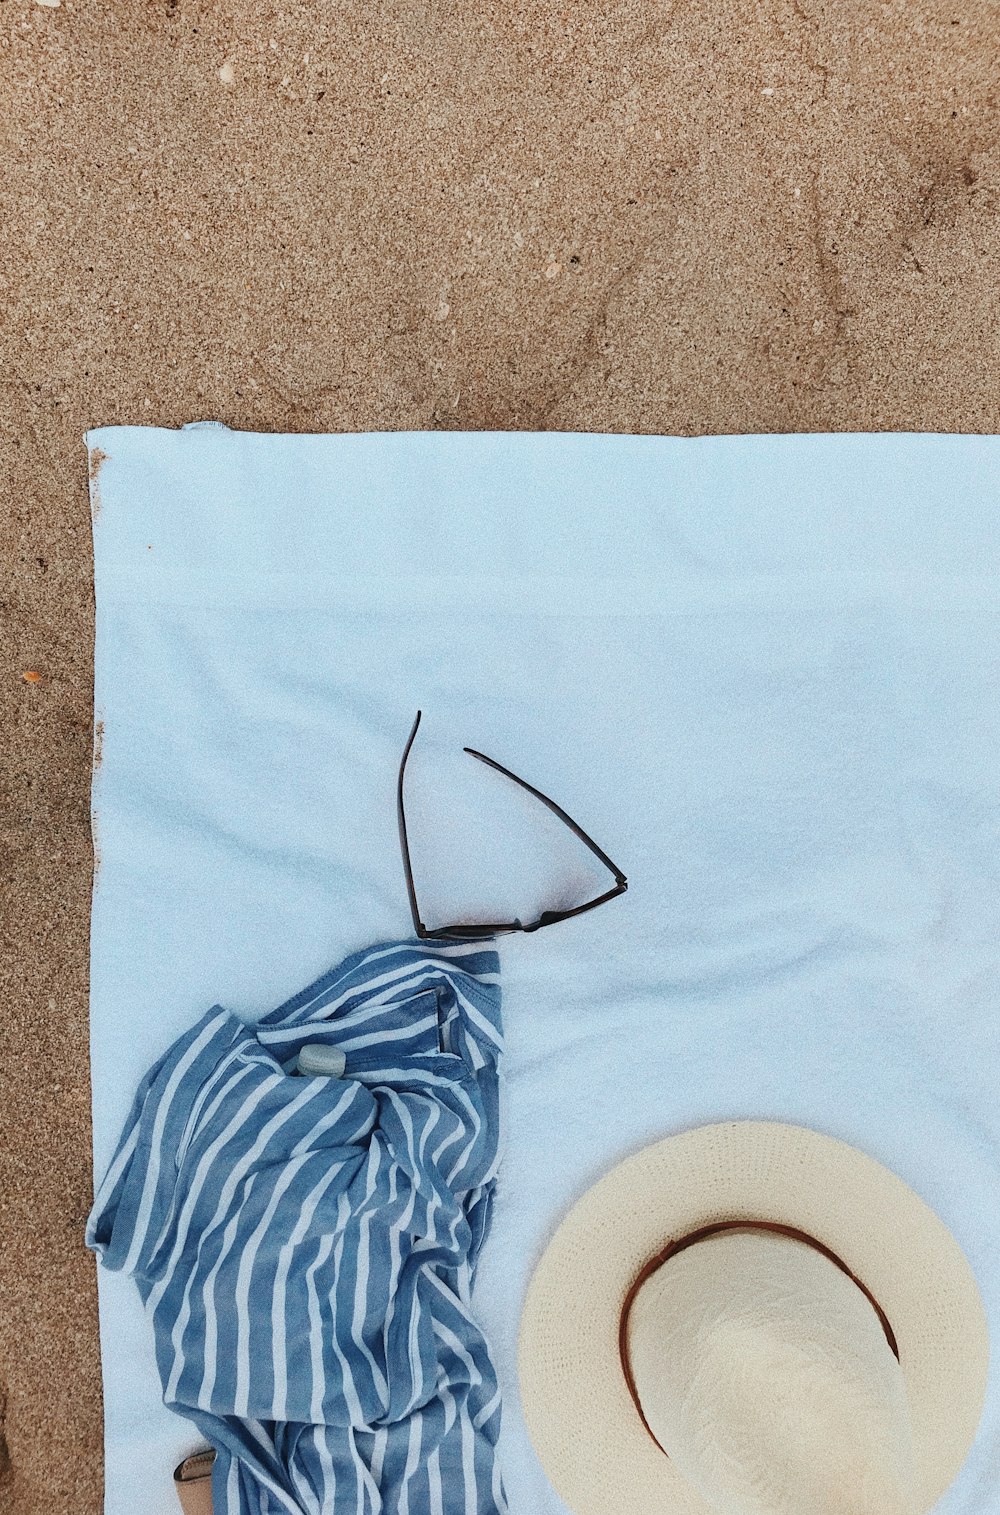 Flay pose la photographie de couverture, chapeau d’été et lunettes de soleil sur serviette polaire